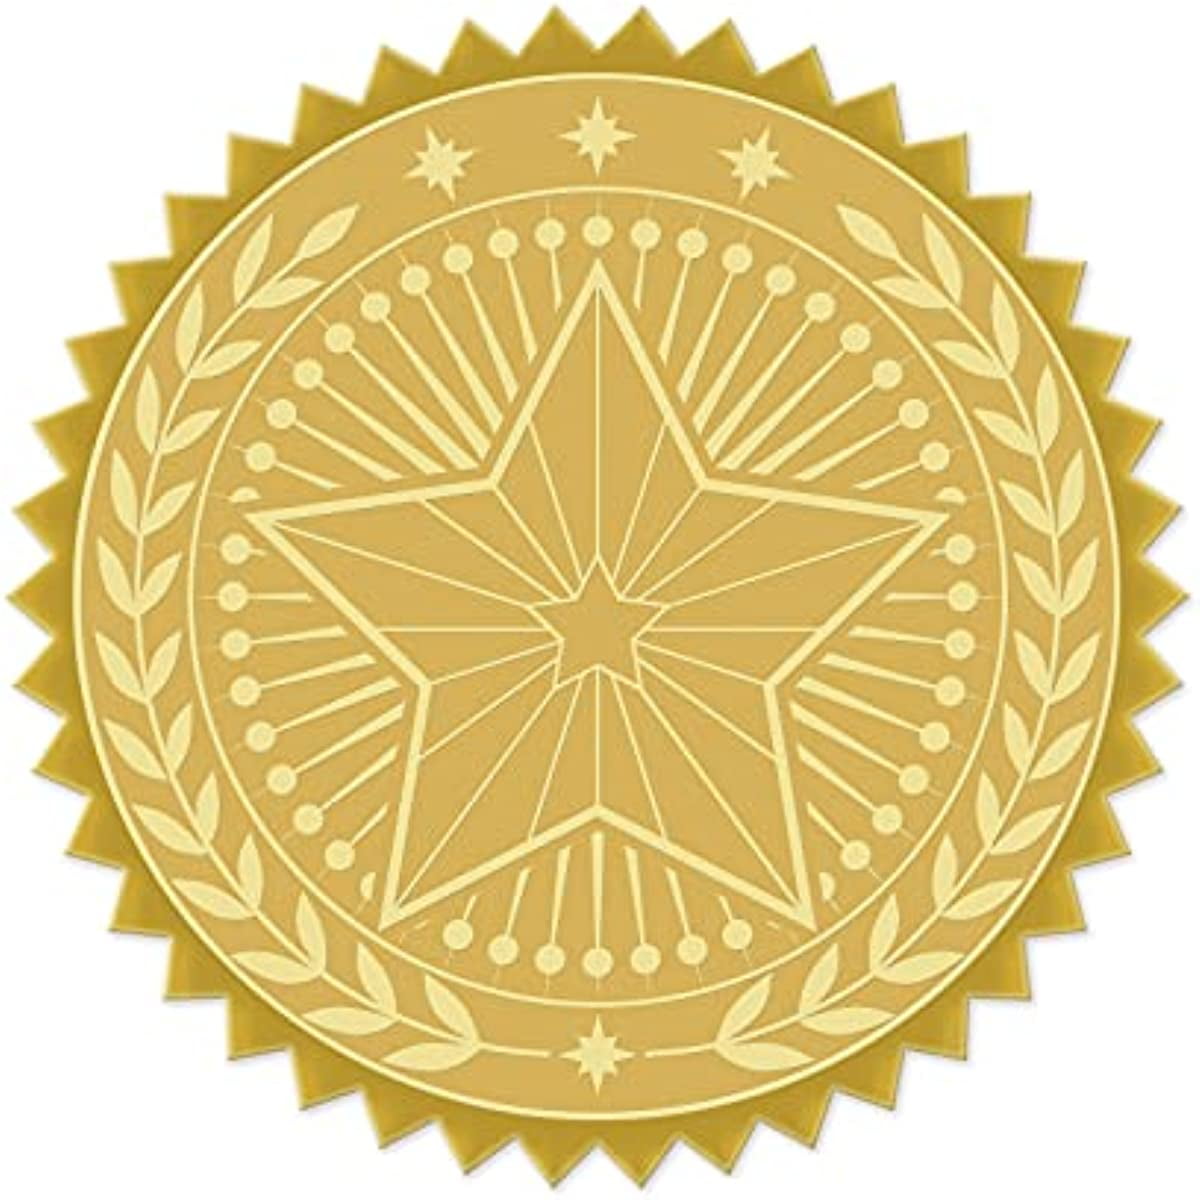 Gold Foil Sticker Fern Leaf 100pcs Certificate Seals Gold Embossed